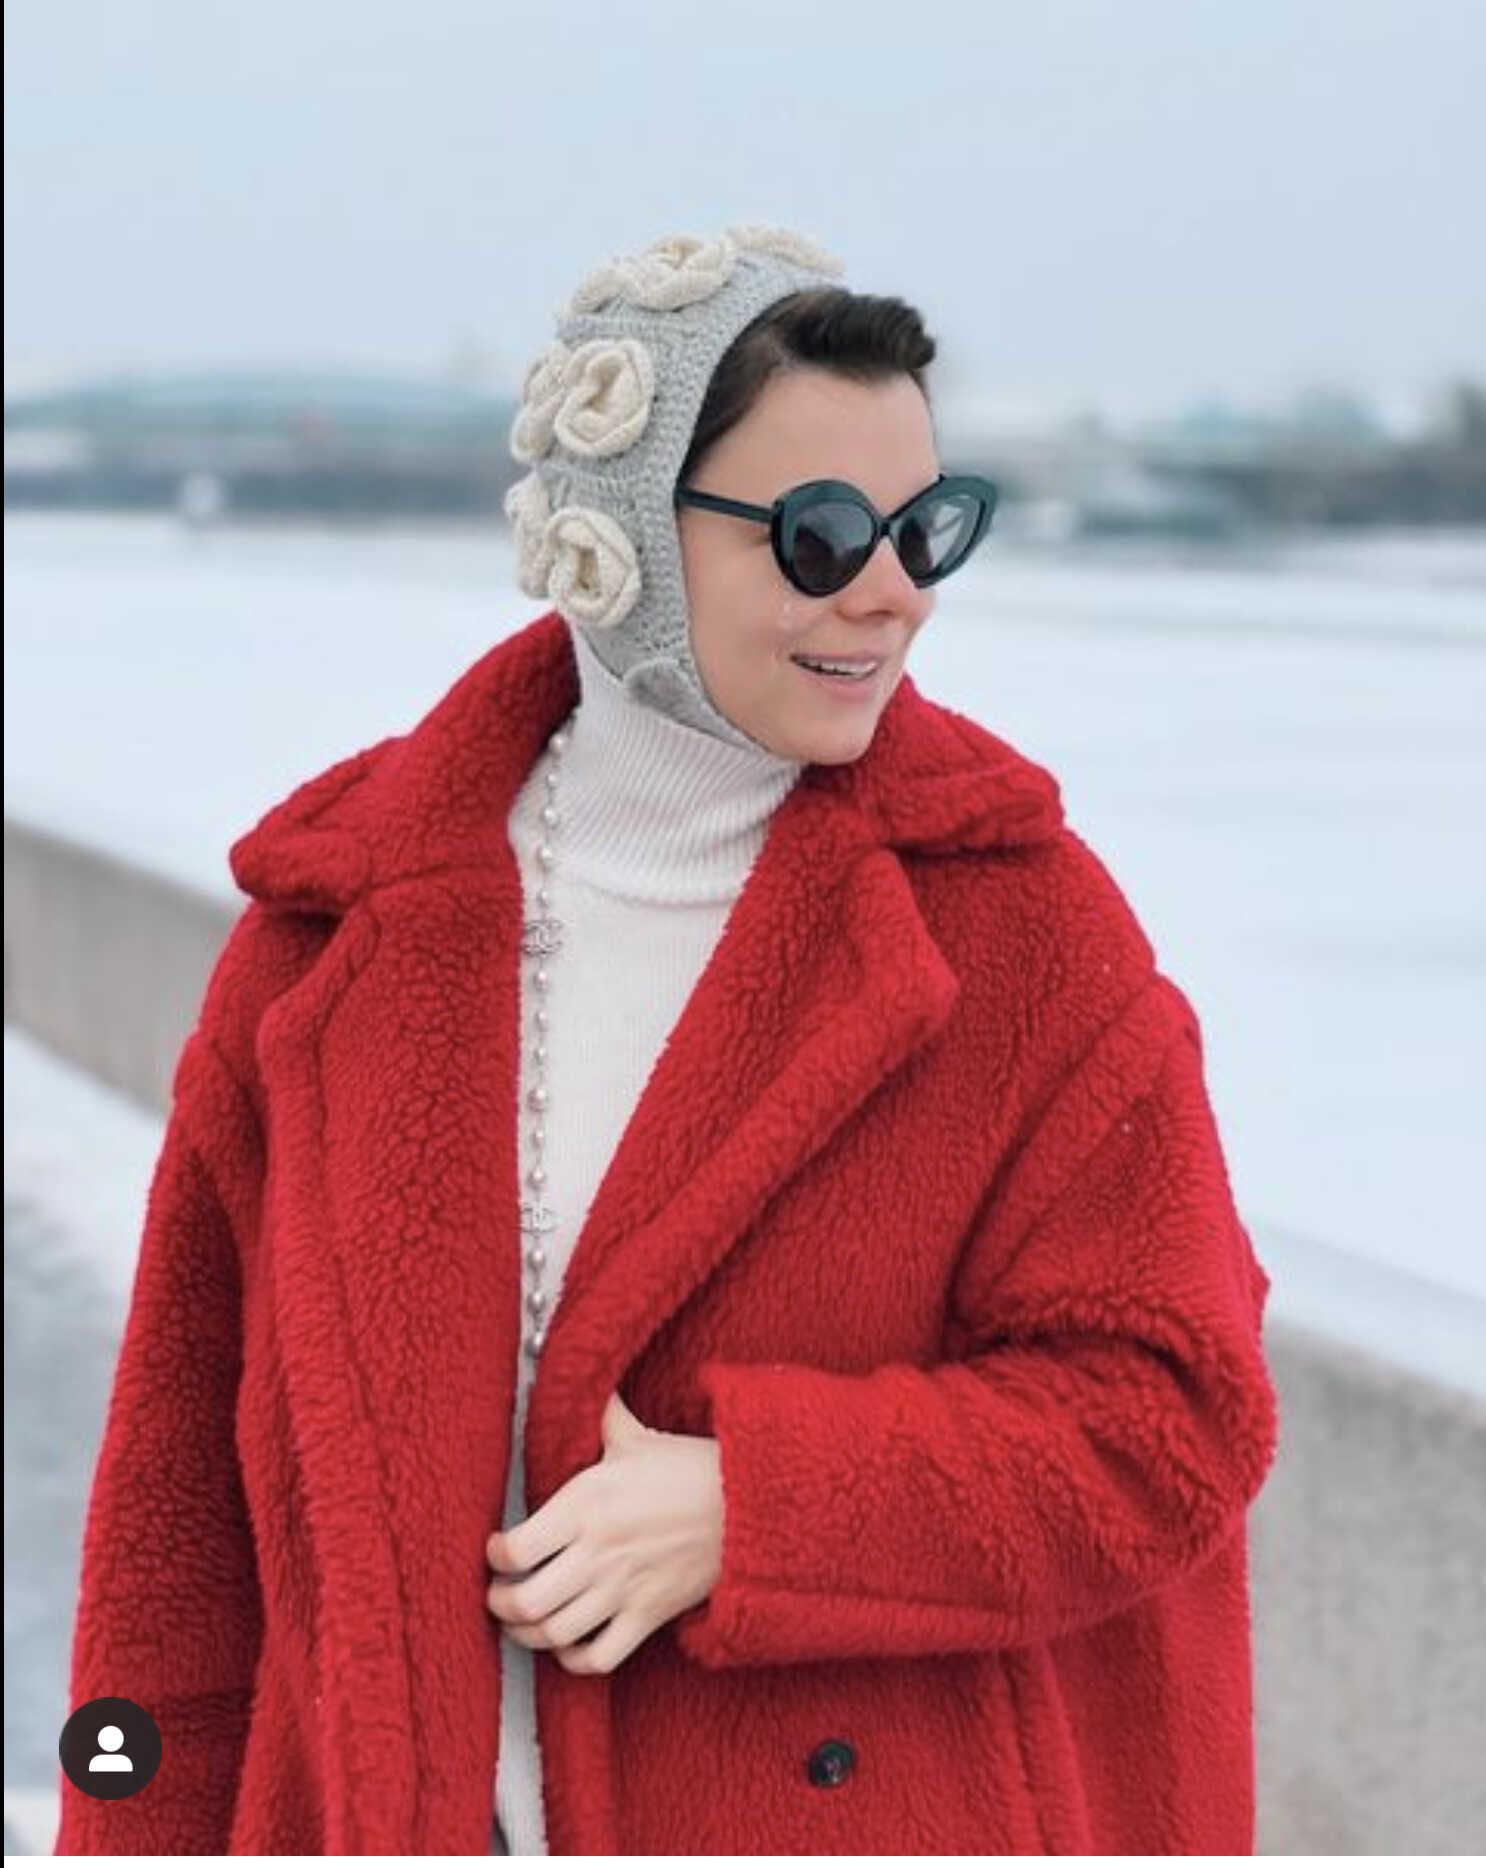 Татьяна Брухунова начала Новый год с нового наряда, который в сети посчитали «придурковатым»